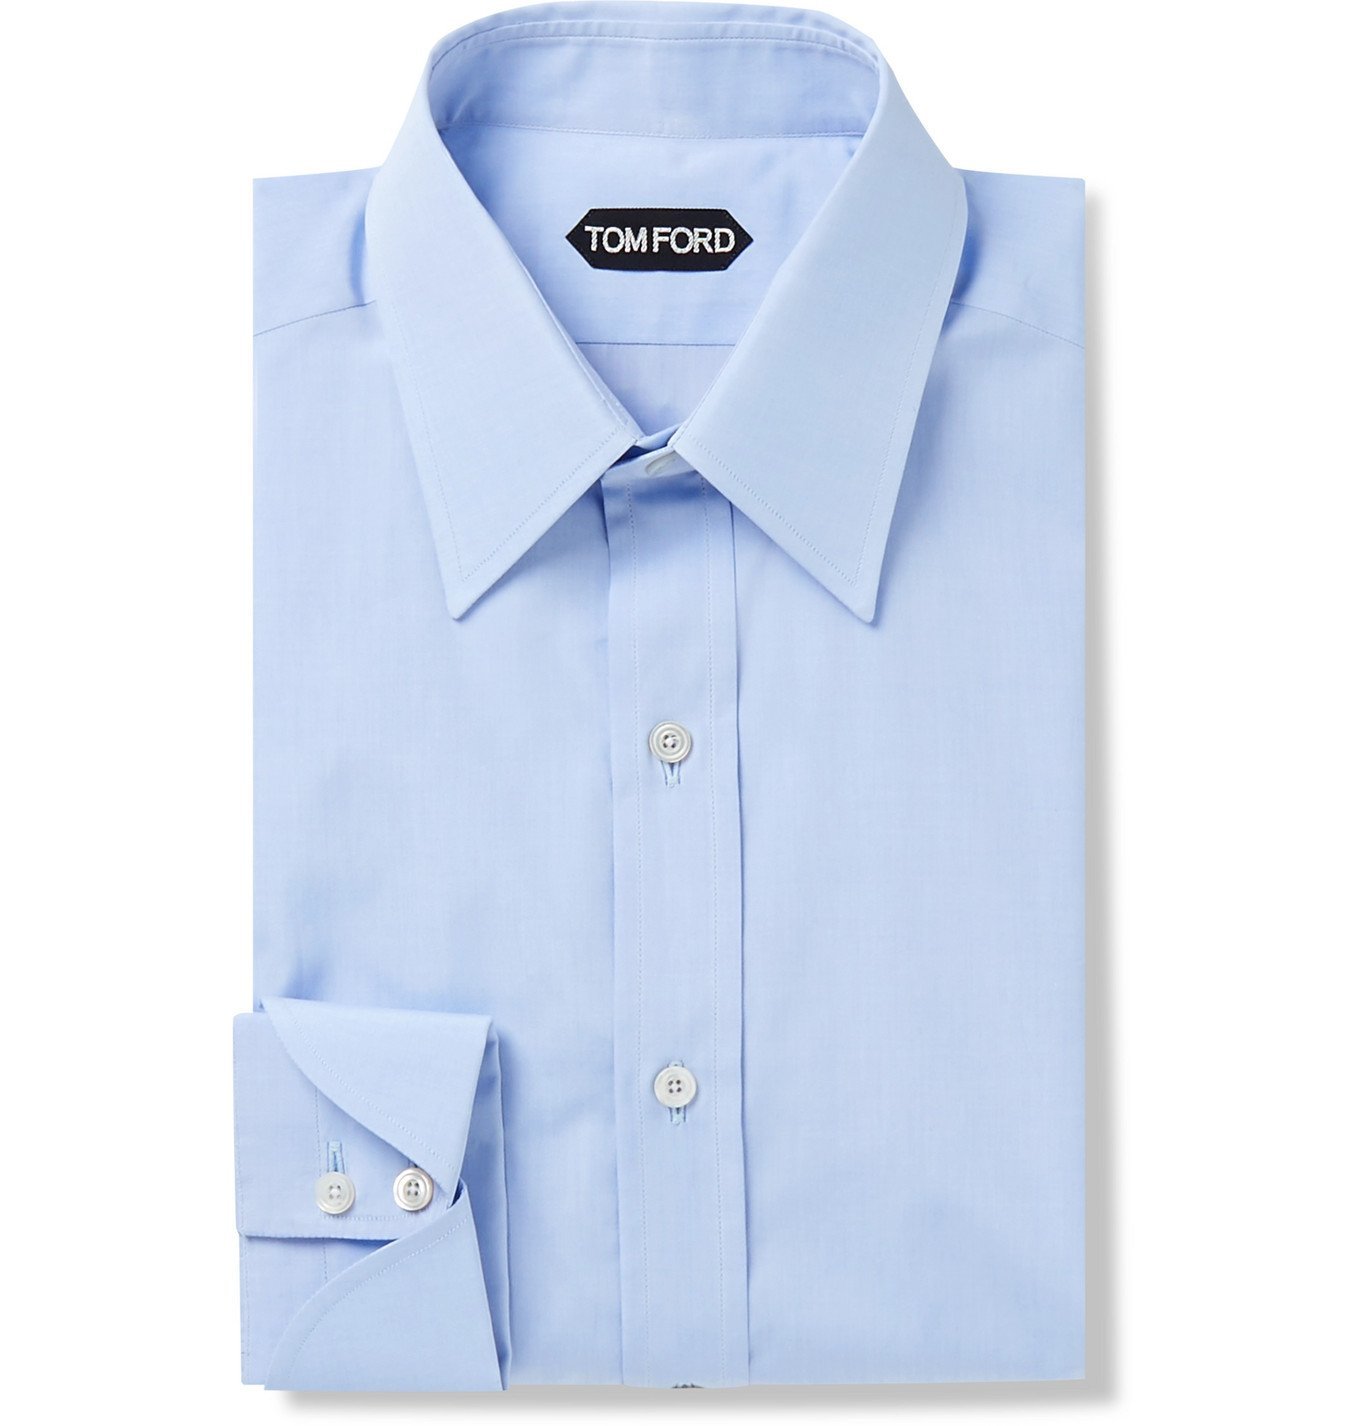 TOM FORD - Slim-Fit Sea Island Cotton Shirt - Blue TOM FORD